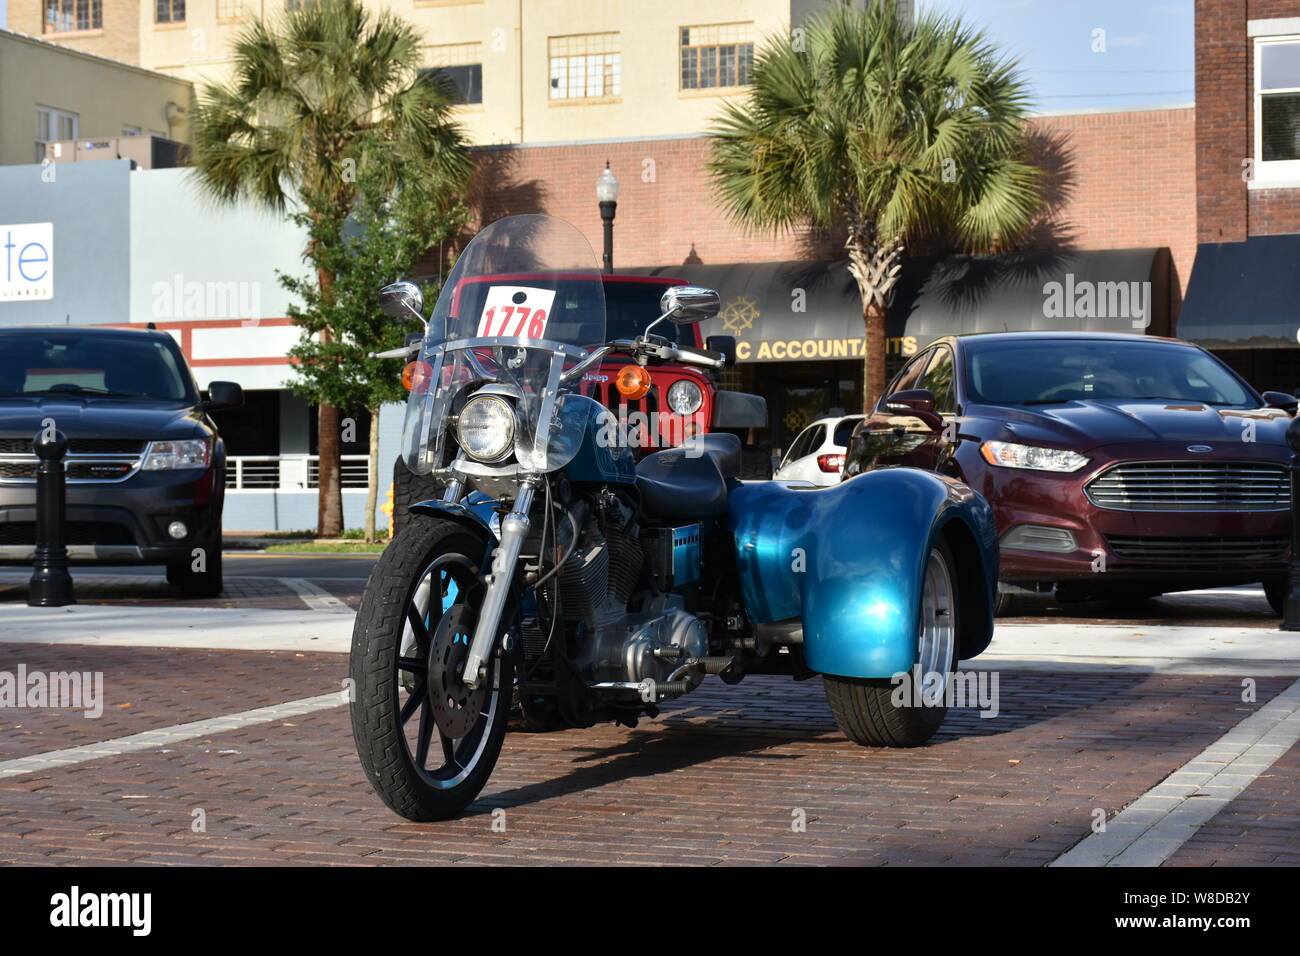 Ich habe diese Foto einer Harley Davidson Sportster am Cruisin' Winter Haven Car Show im Winter Haven, Florida am 4. Mai 2019. Stockfoto